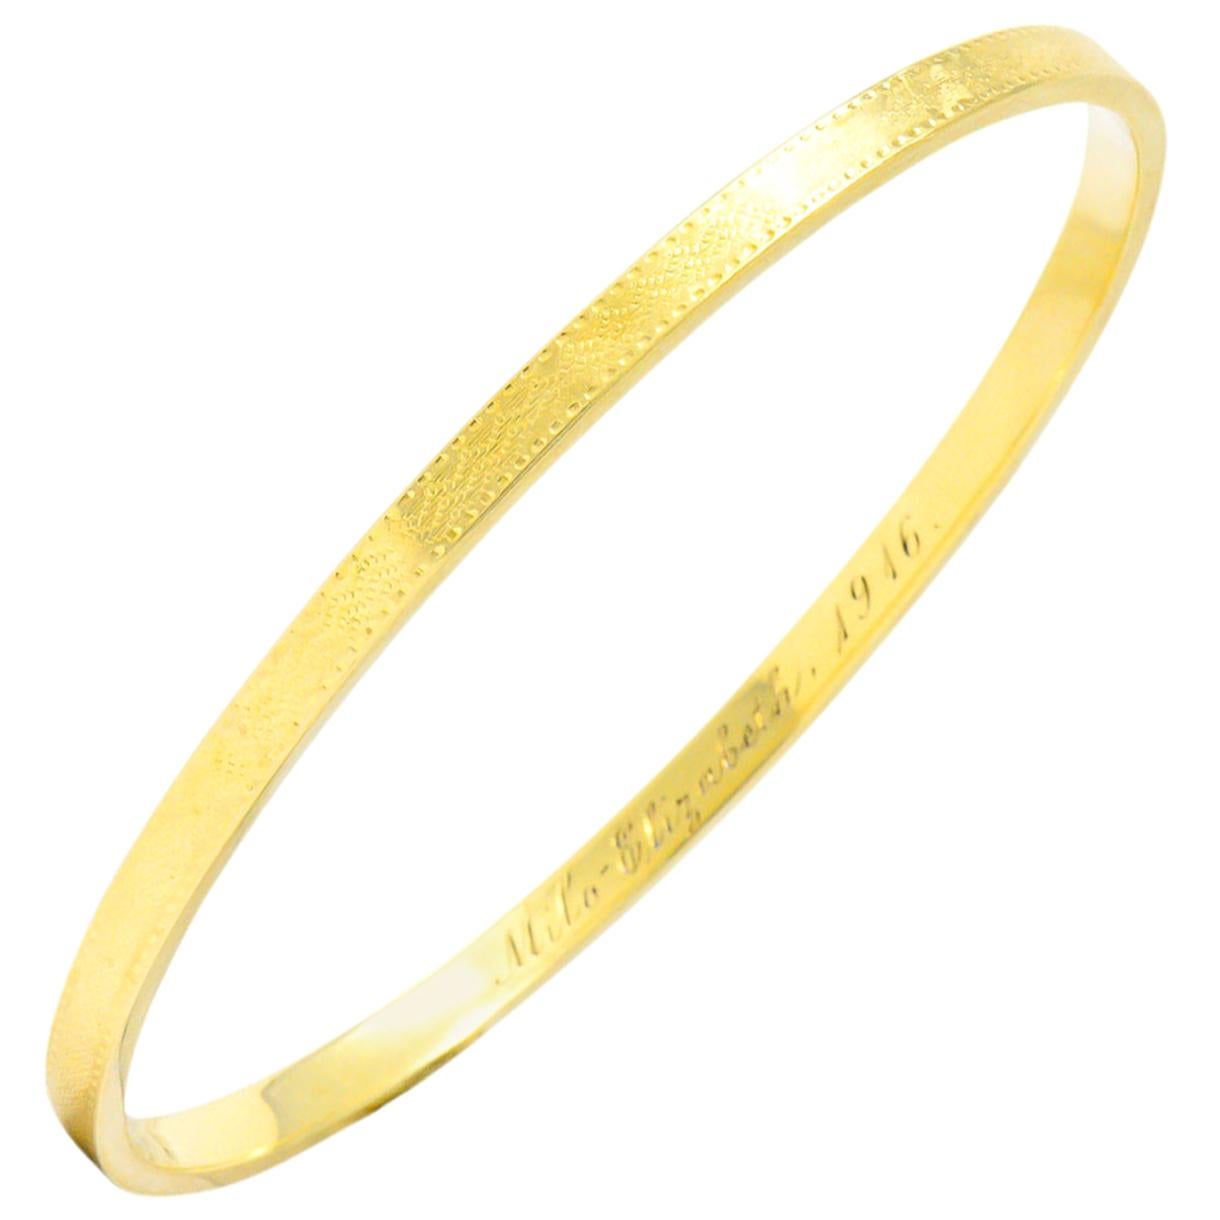 Sloan & Co. Edwardian 14 Karat Yellow Gold Bangle Bracelet